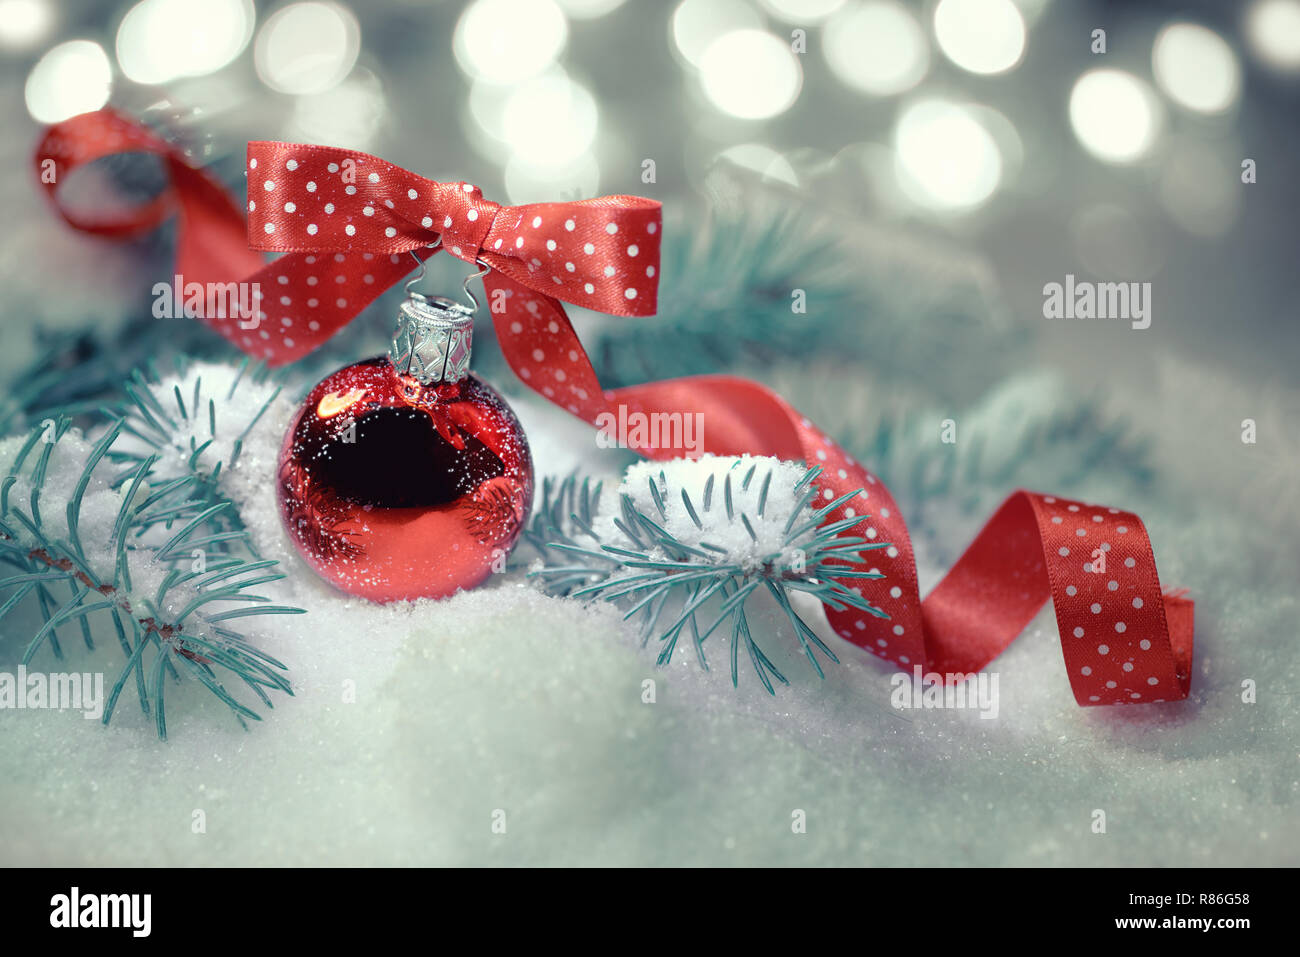 Boule de Noël rouge avec ruban à pois noeud sur un fond neutre avec des feux d'hiver noël Banque D'Images